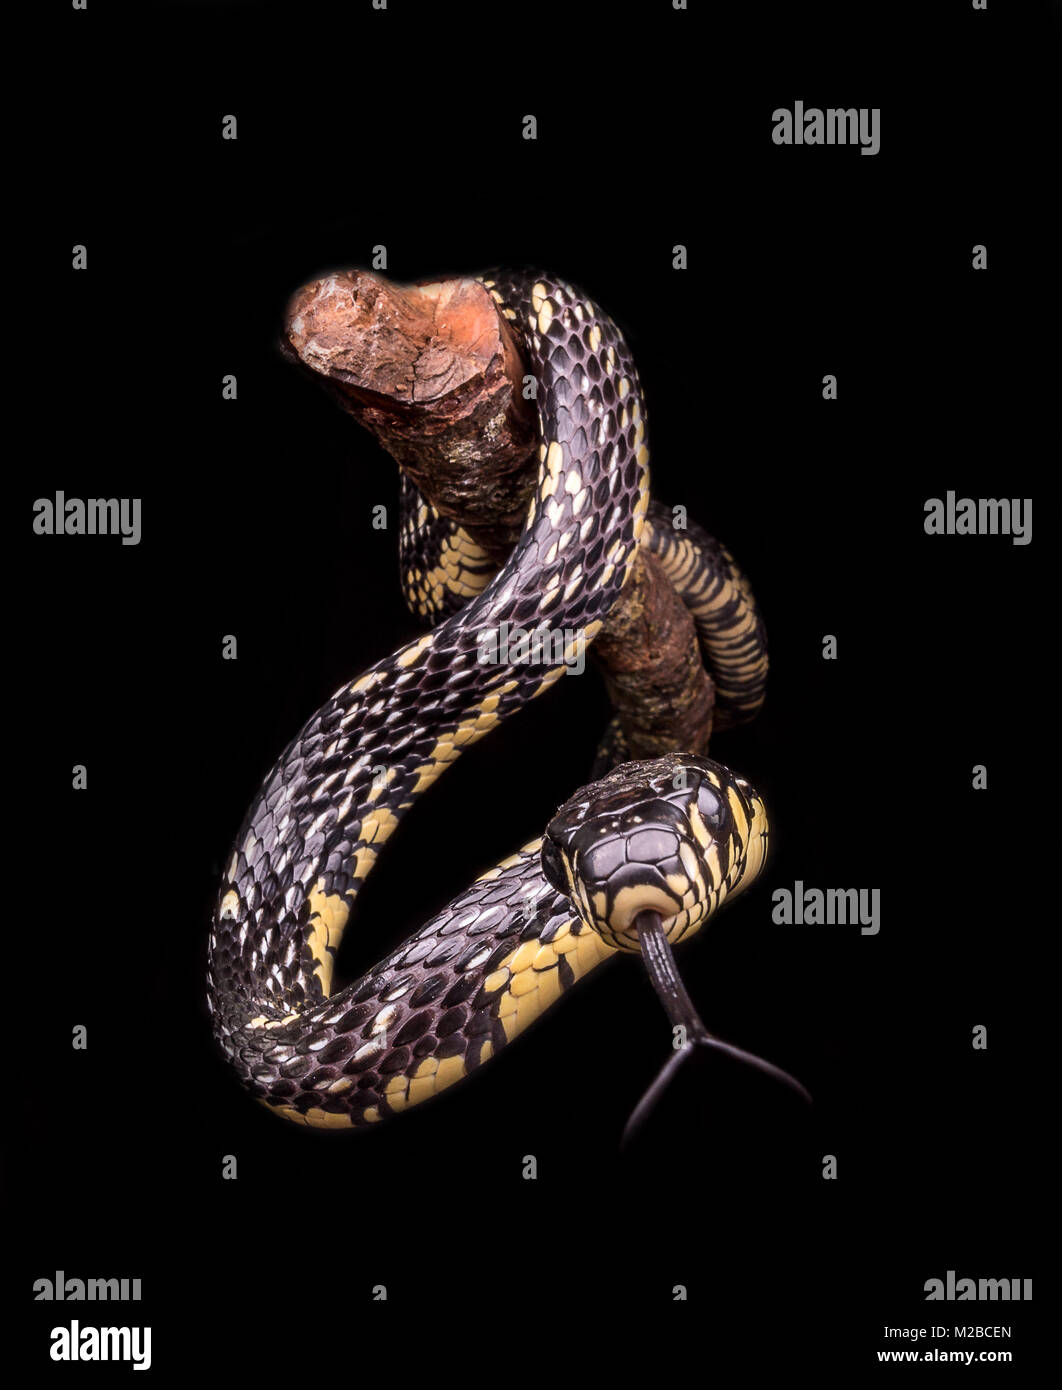 Spilotes puillatus / Yellow rat snake Foto de stock